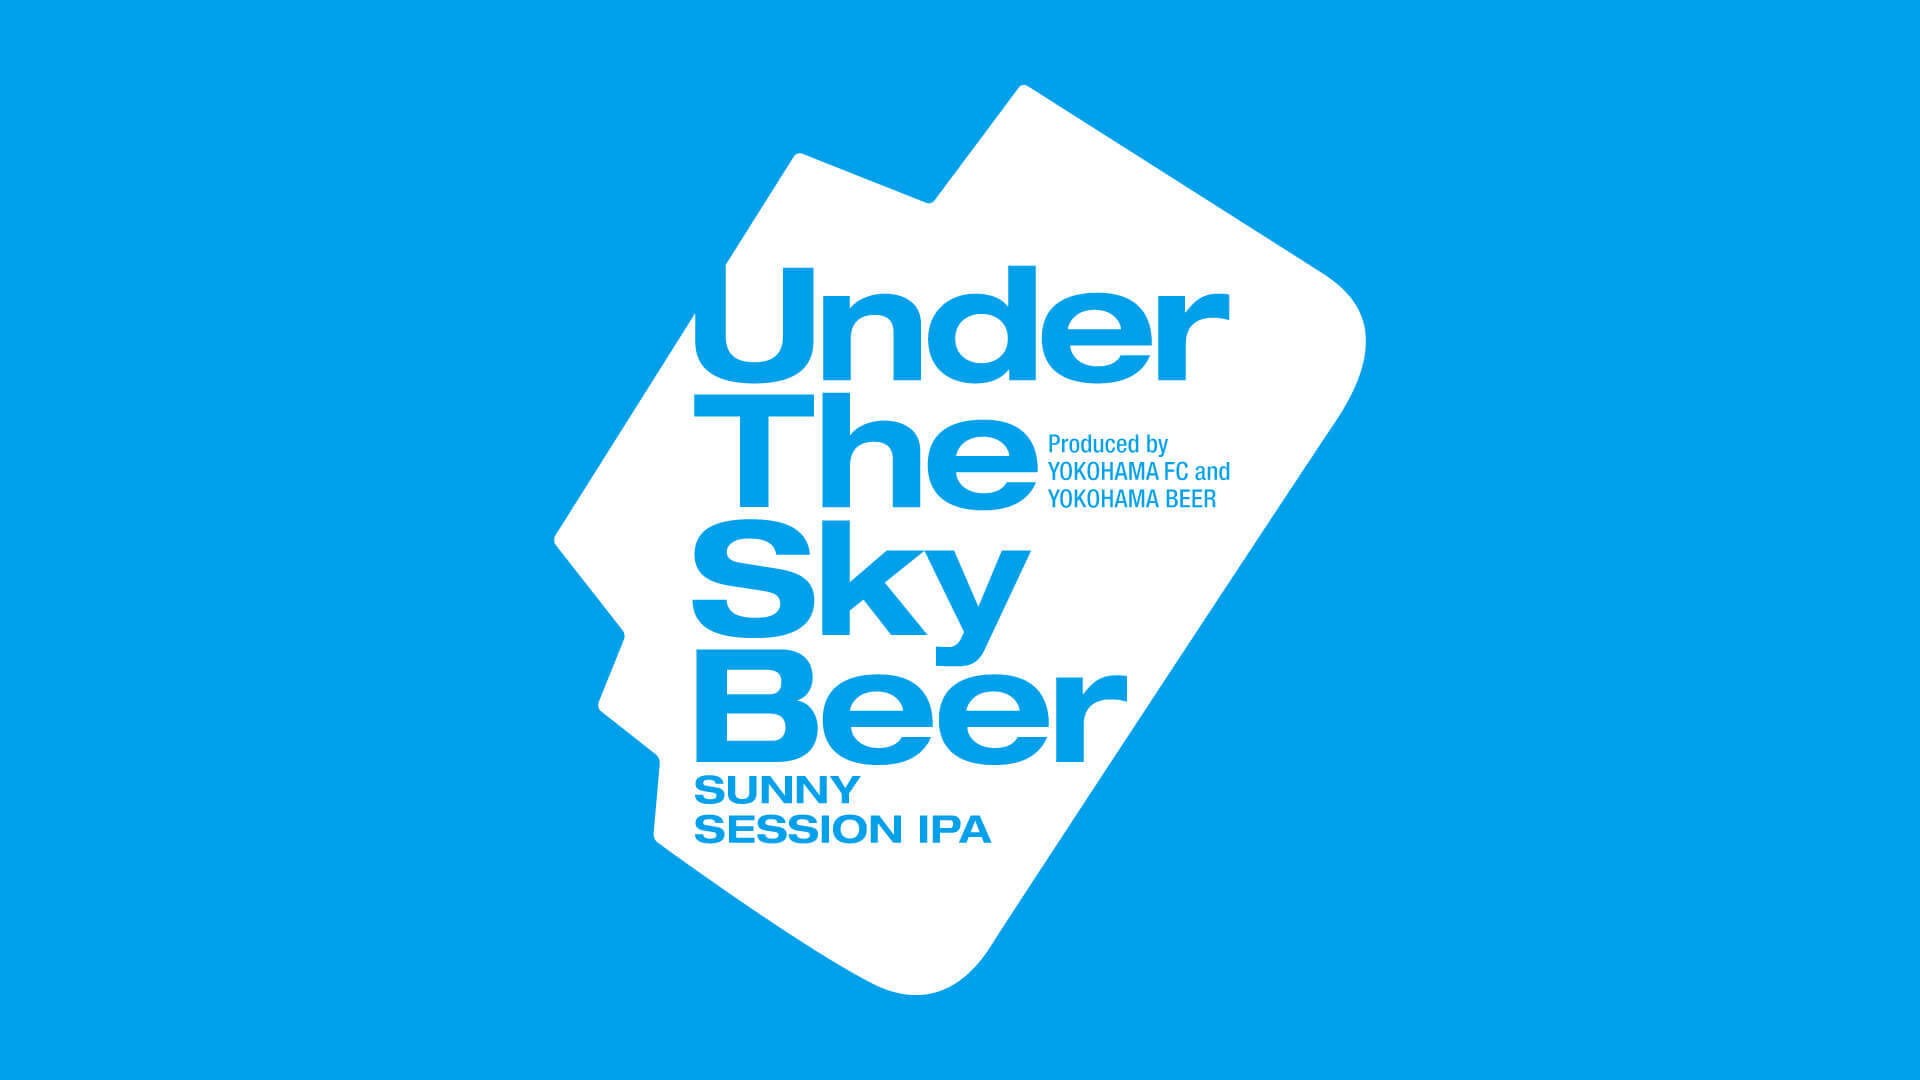 横浜FC×横浜ビールがコラボ！オリジナルビール「Under The Sky Beer～SUNNY Session IPA～」が発売に